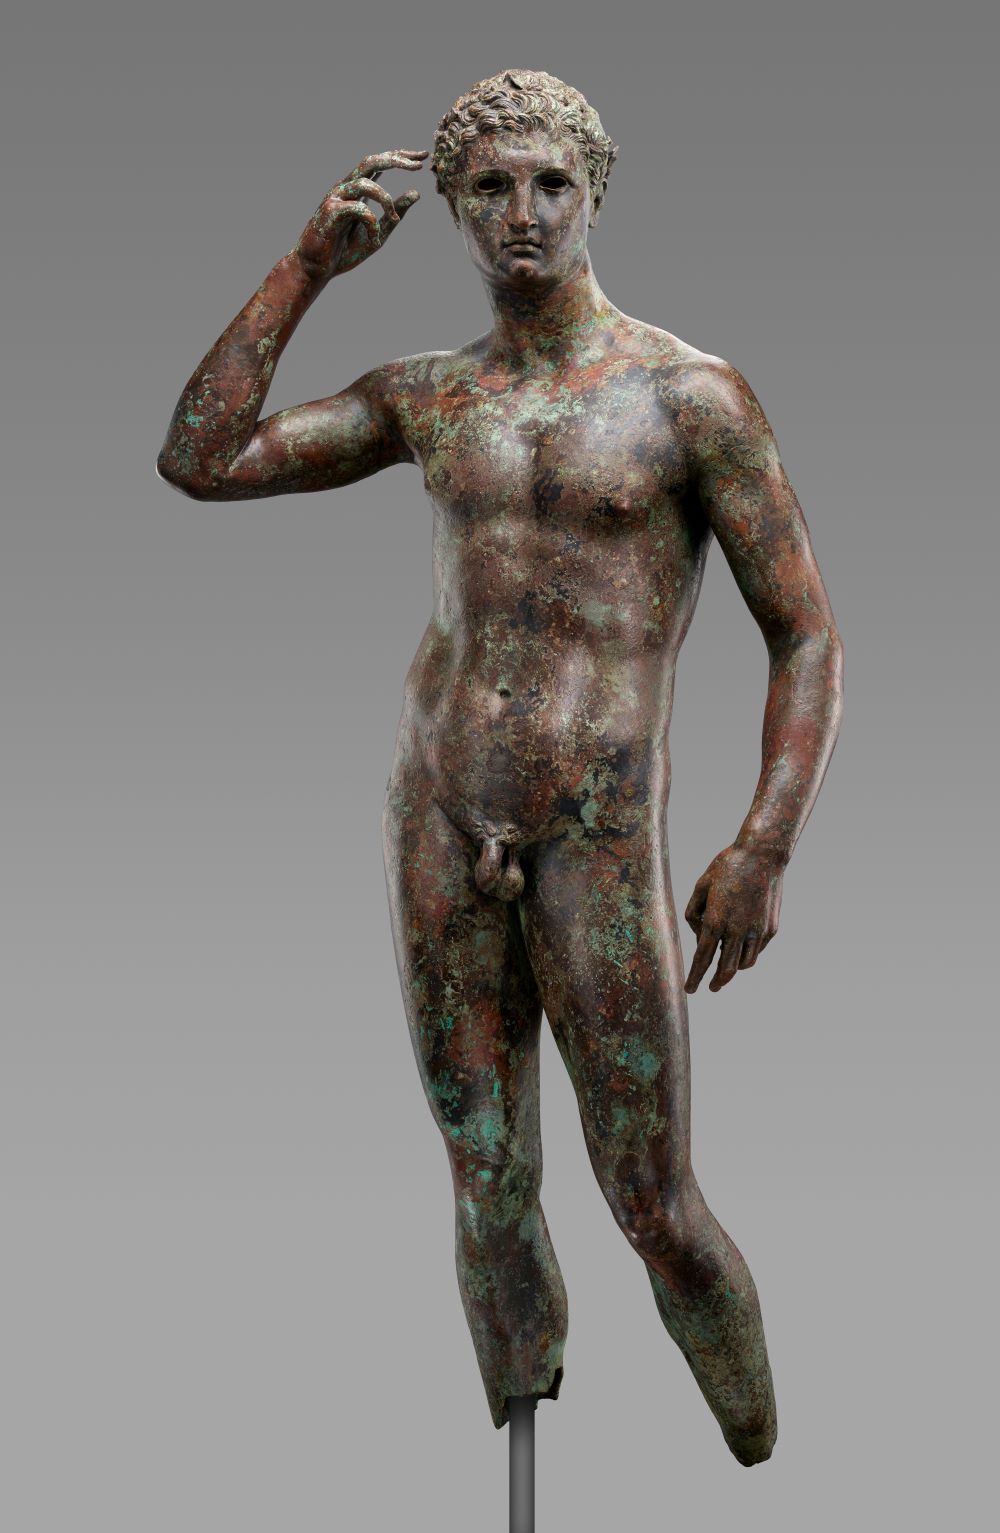 Το χάλκινο άγαλμα του Λυσίππου «Νικηφόρος νέος» ή «Αθλητής του Φάνο»  όπως εκτίθεται στο αμερικανικό μουσείο Γκέτι